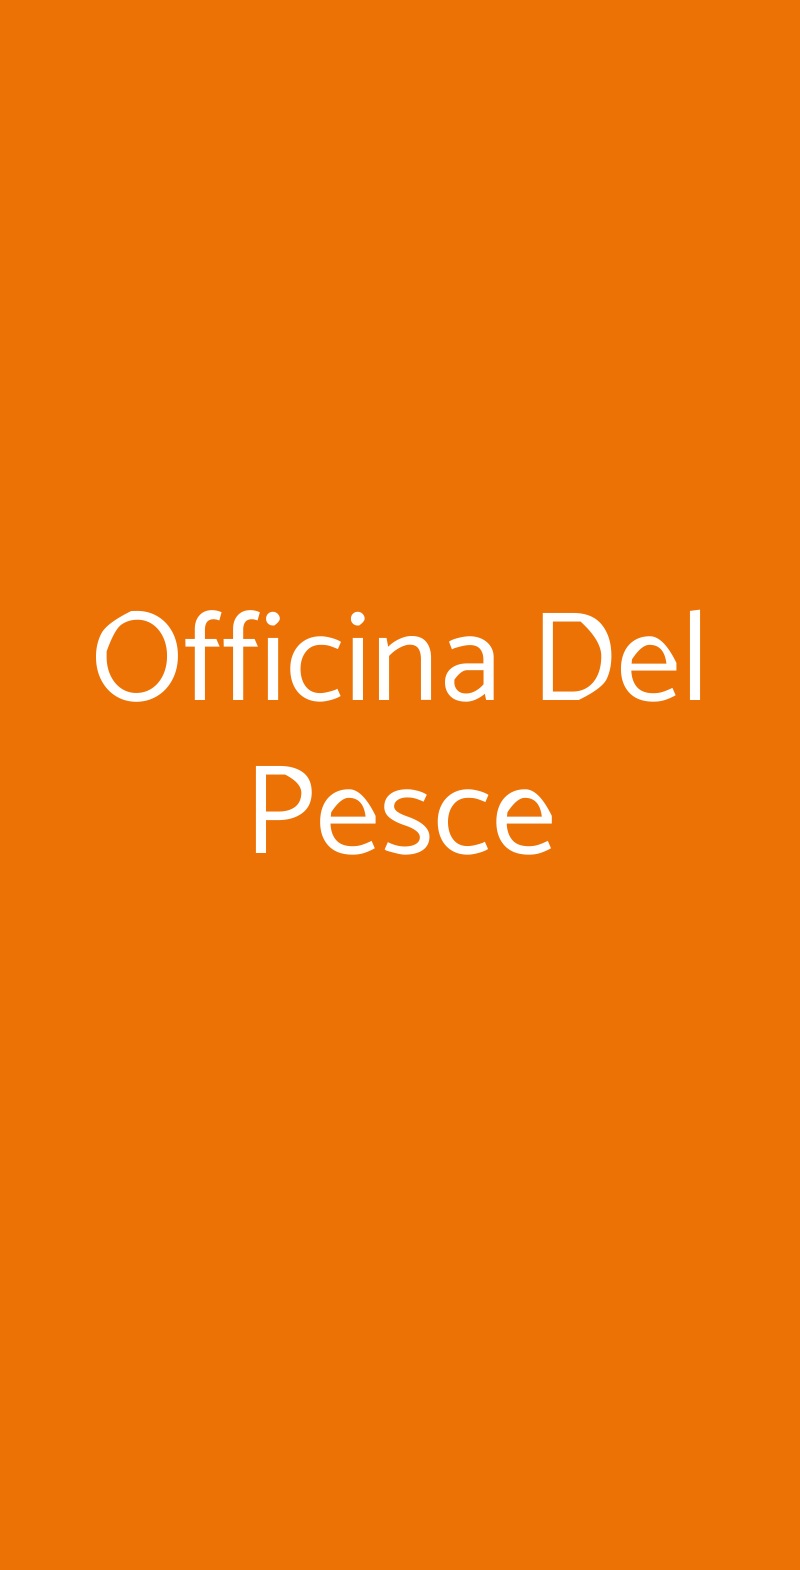 Officina Del Pesce Fano menù 1 pagina